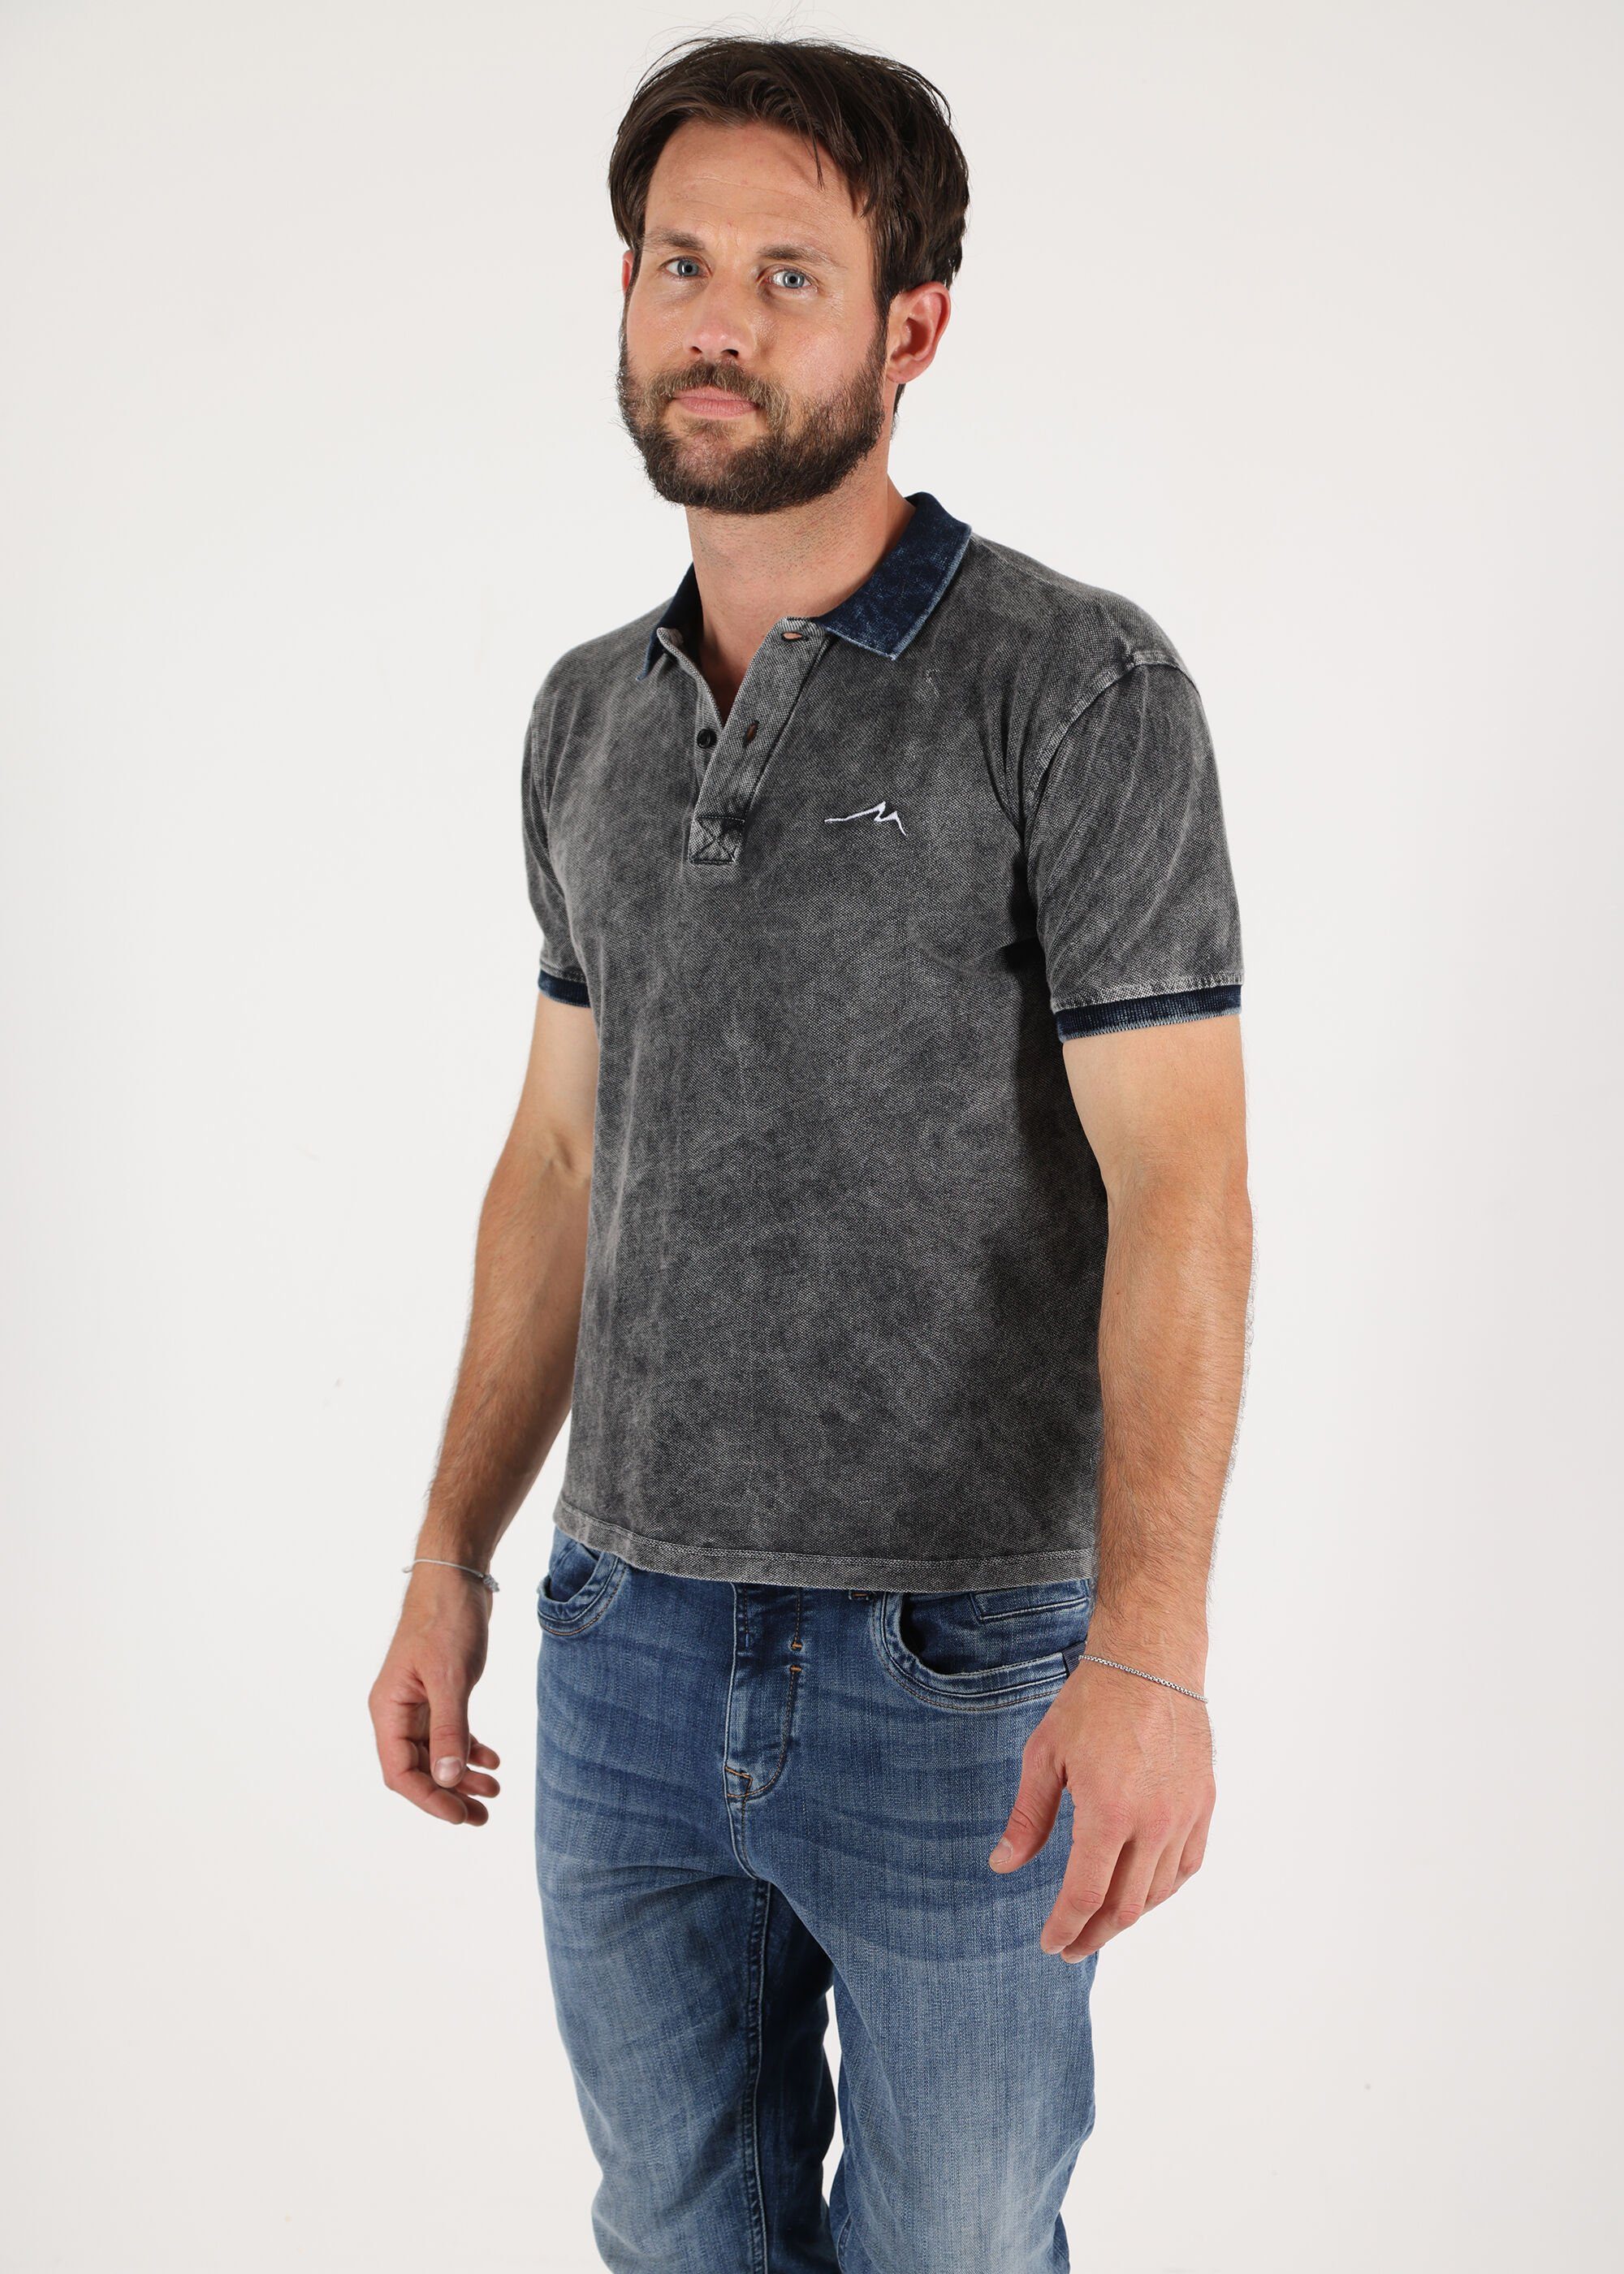 unifarbenen Poloshirt Anthra Denim Design im Miracle of